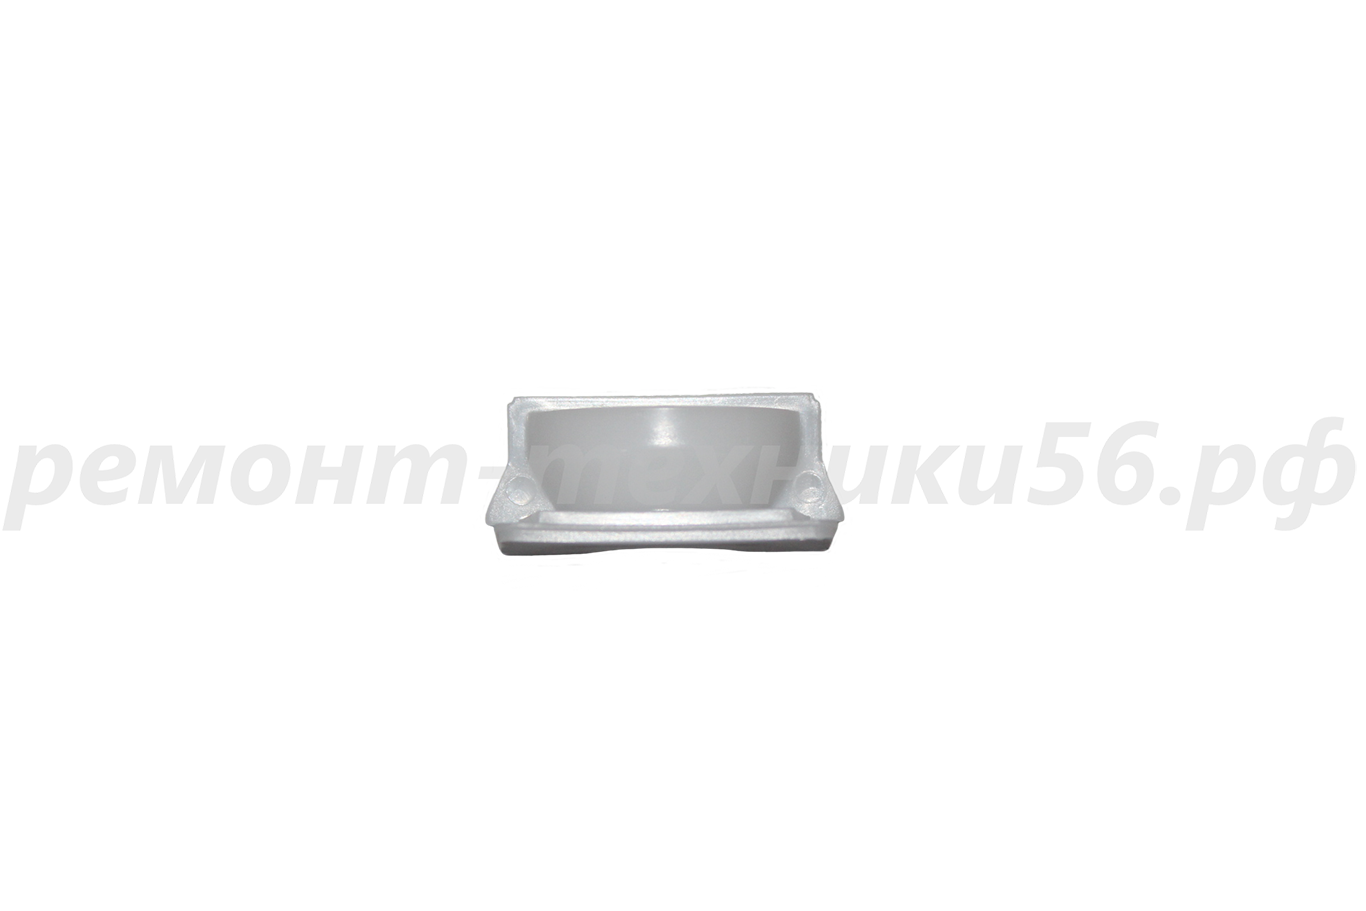 Подшипник скольжения передний Electrolux EHAW - 7510D black (сенсорное упр.) по выгодной цене фото4